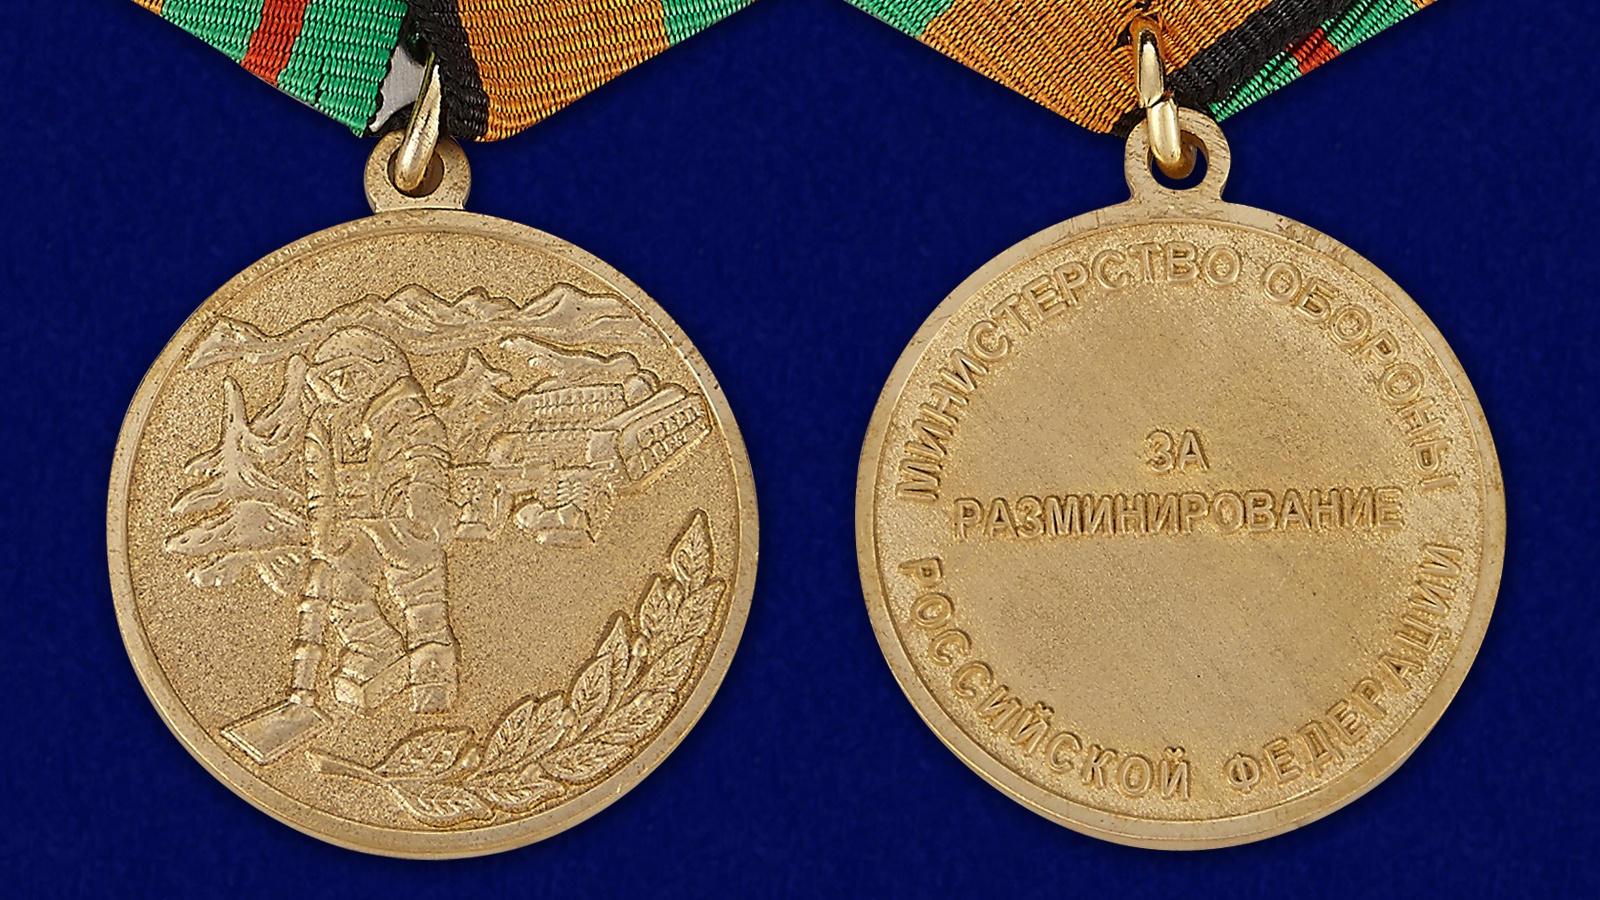 Медаль МО РФ "За разминирование" в наградном футляре 